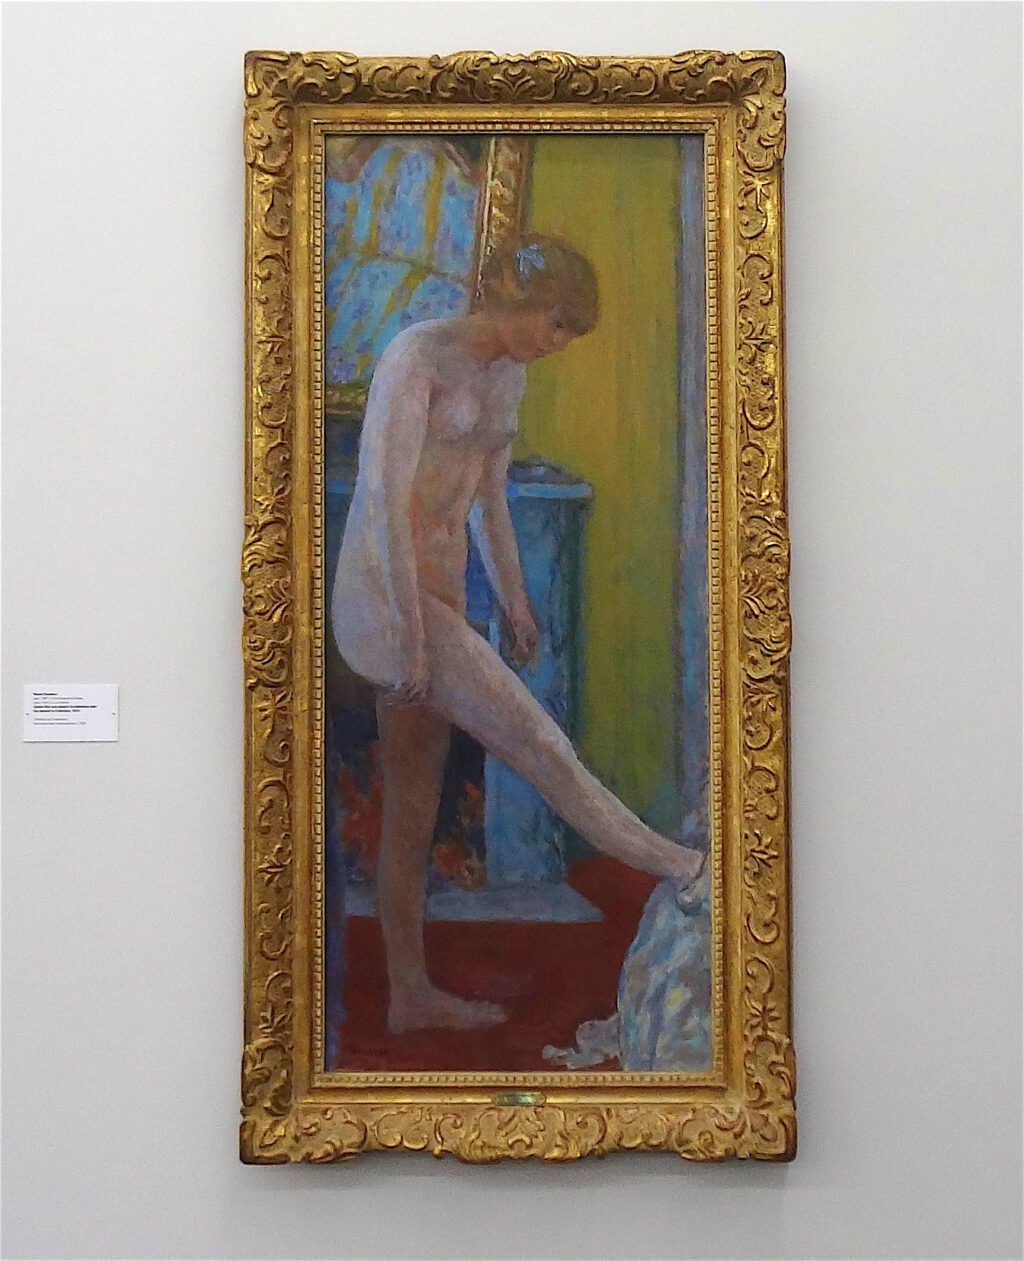 ピエール・ボナール「暖炉の前の裸の女の子」1919年、ウィンタートゥール